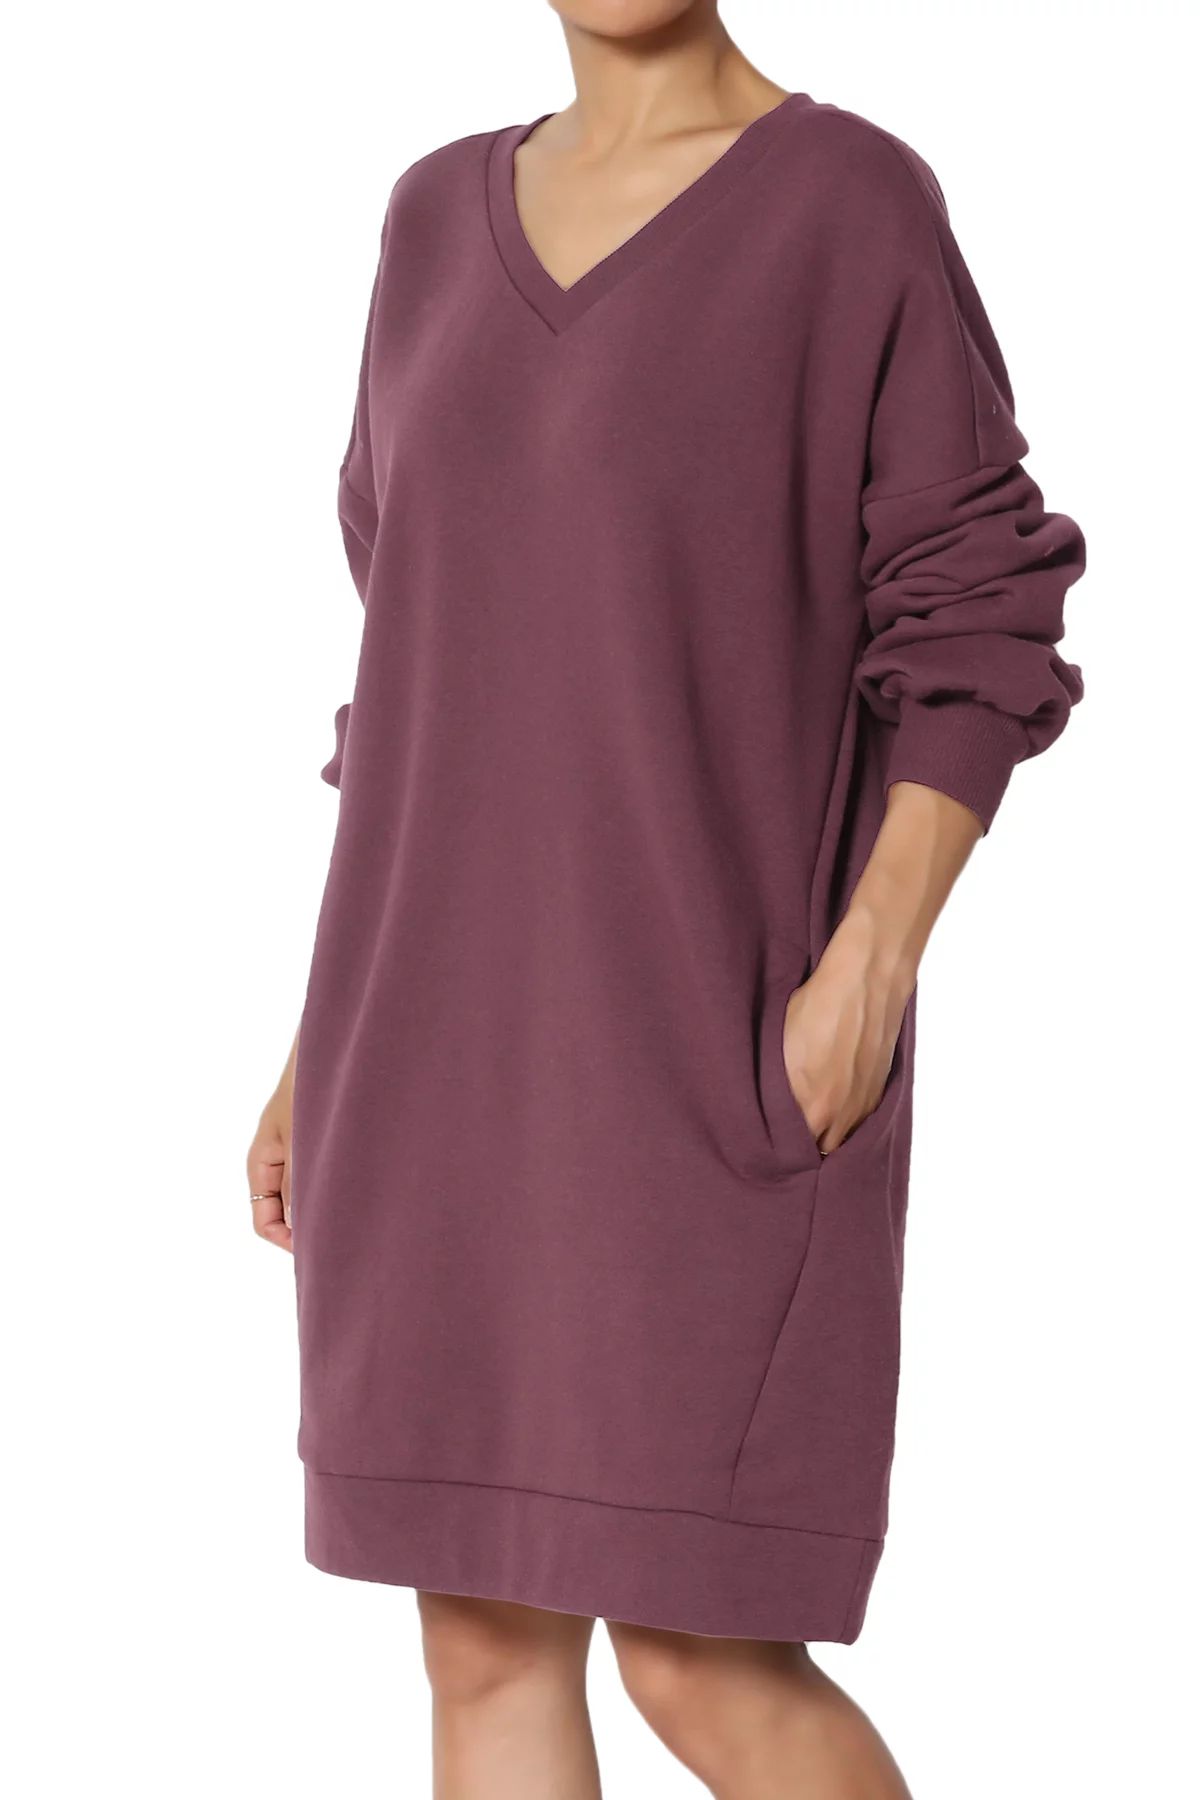 TheMogan Women's PLUS Oversized V-Neck Long Sleeve Pocket Fleece Tunic Sweatshirts - Walmart.com | Walmart (US)